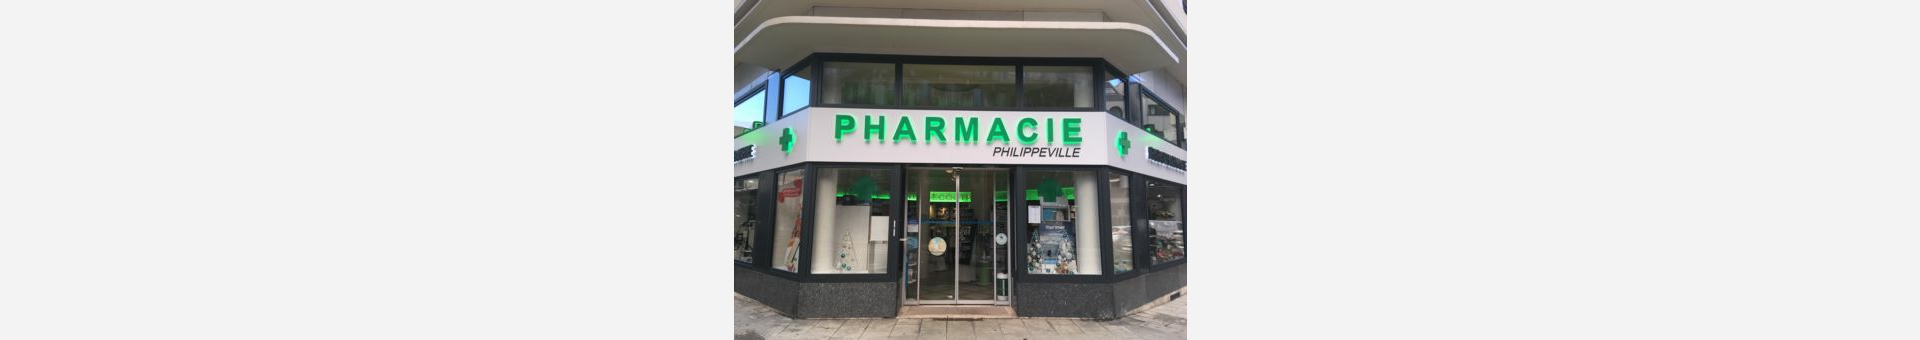 Pharmacie Philippeville,Grenoble